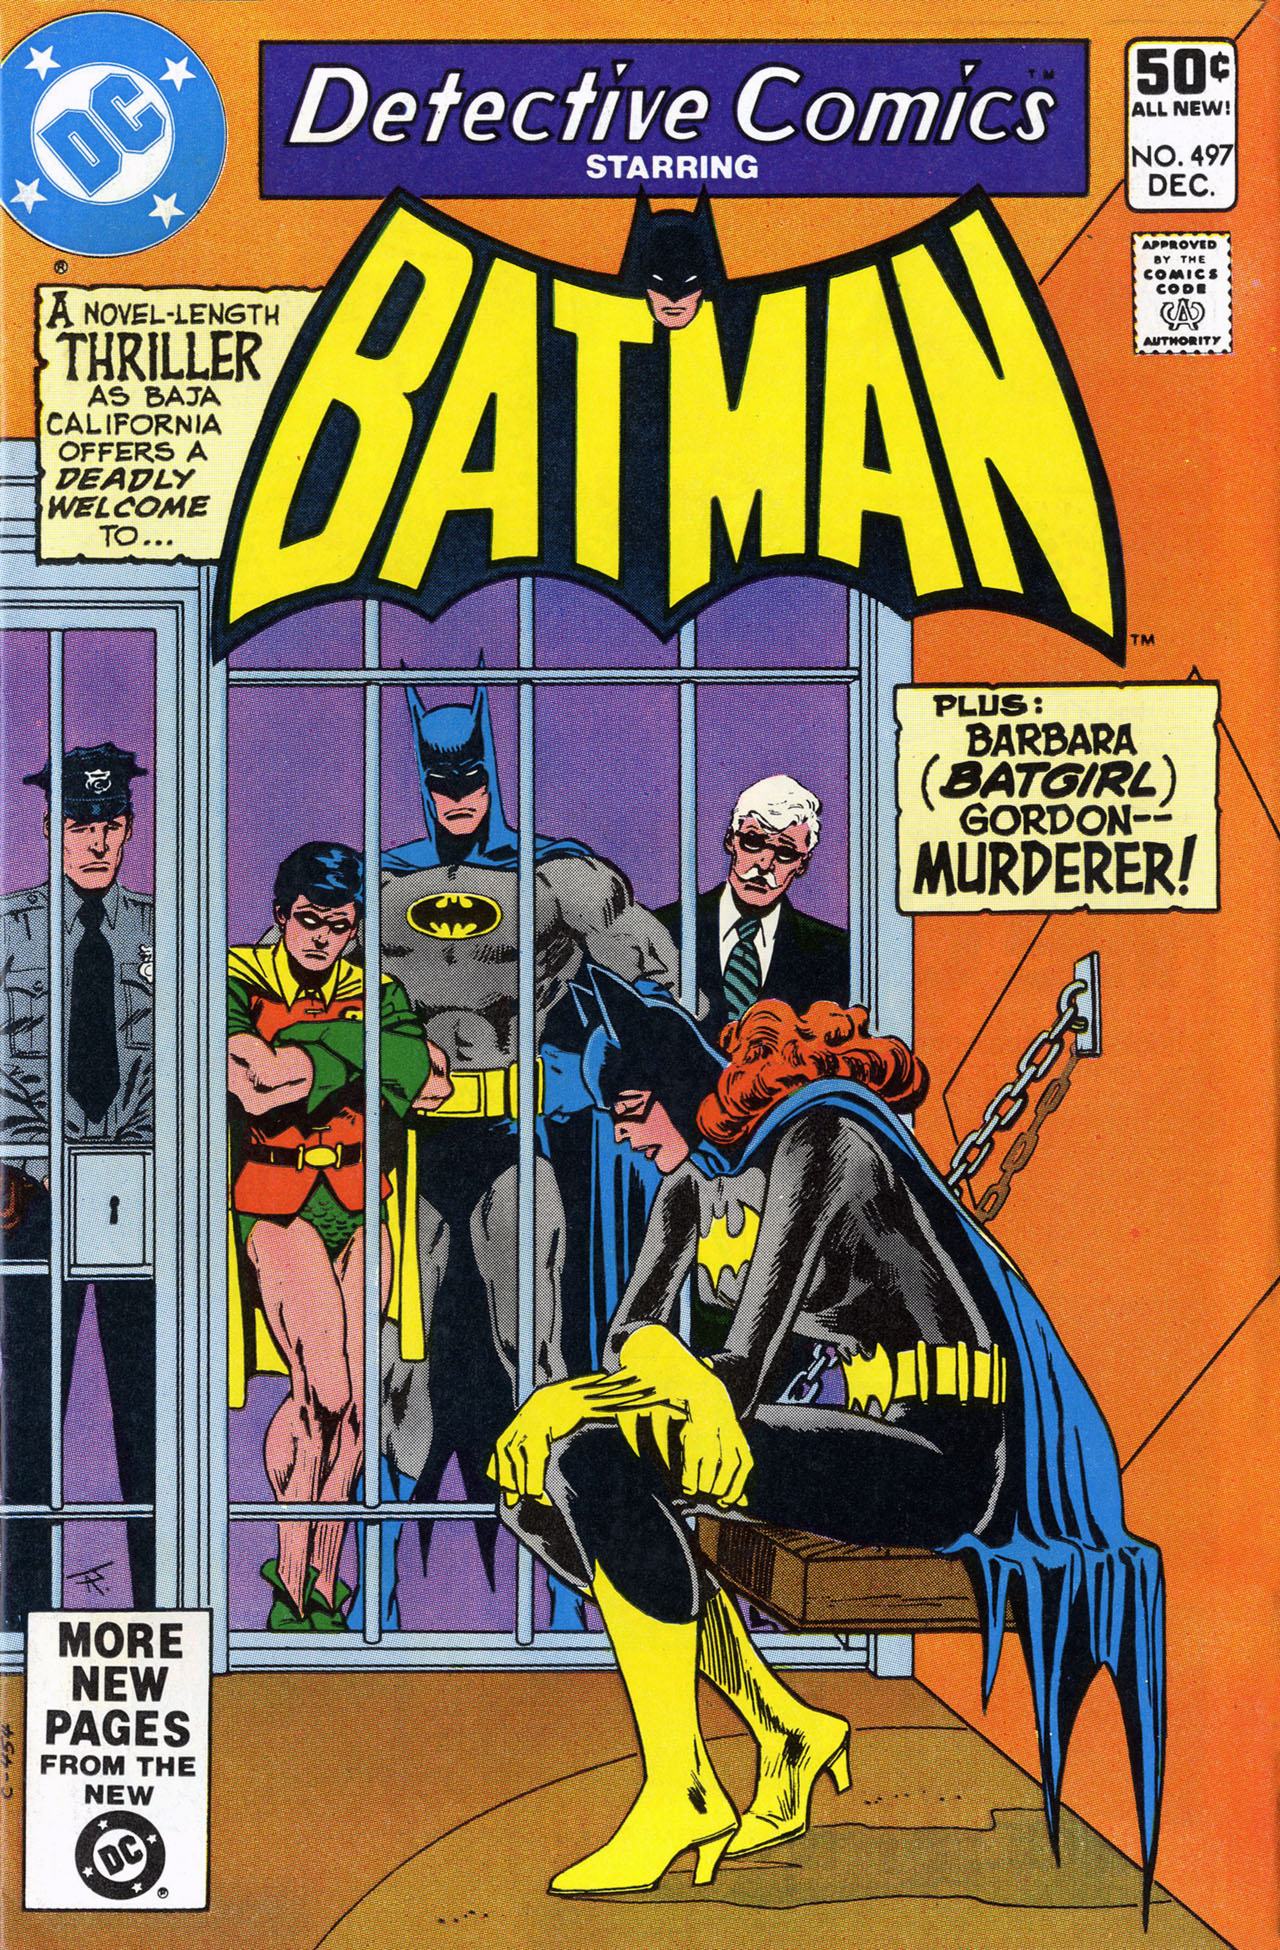 Detective Comics Vol 1 497 | DC Database | Fandom